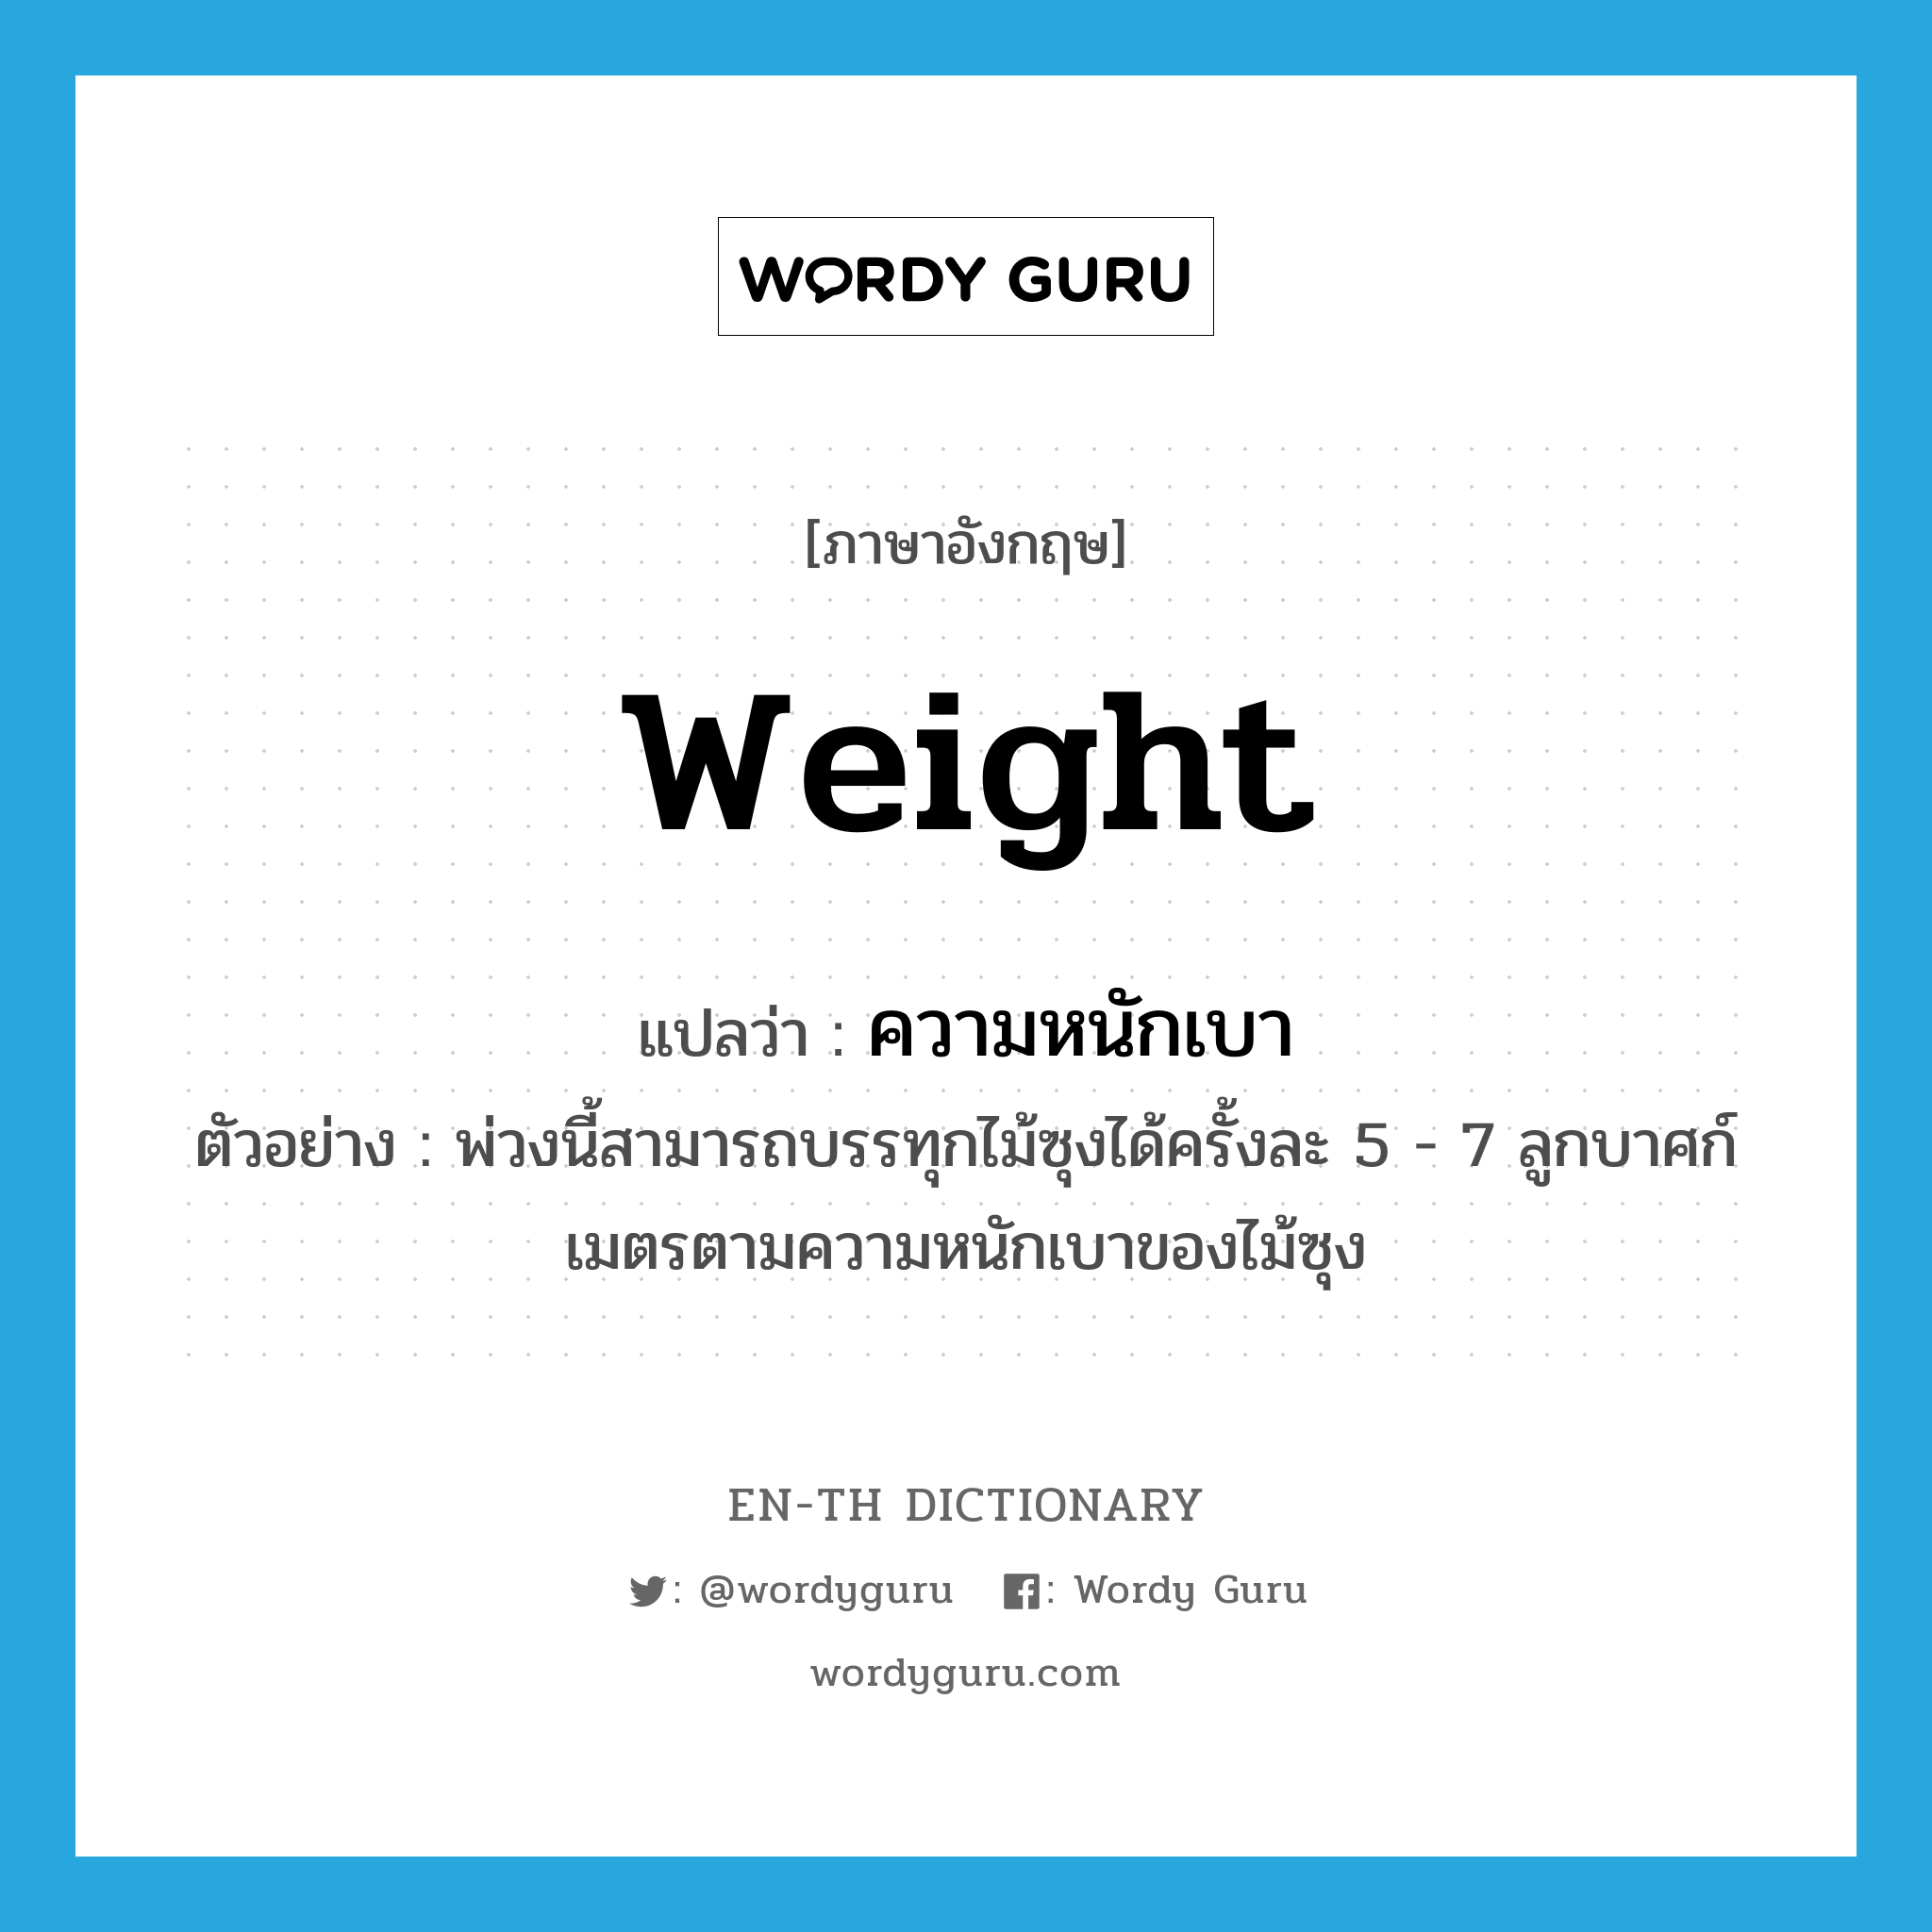 weight แปลว่า?, คำศัพท์ภาษาอังกฤษ weight แปลว่า ความหนักเบา ประเภท N ตัวอย่าง พ่วงนี้สามารถบรรทุกไม้ซุงได้ครั้งละ 5 - 7 ลูกบาศก์เมตรตามความหนักเบาของไม้ซุง หมวด N